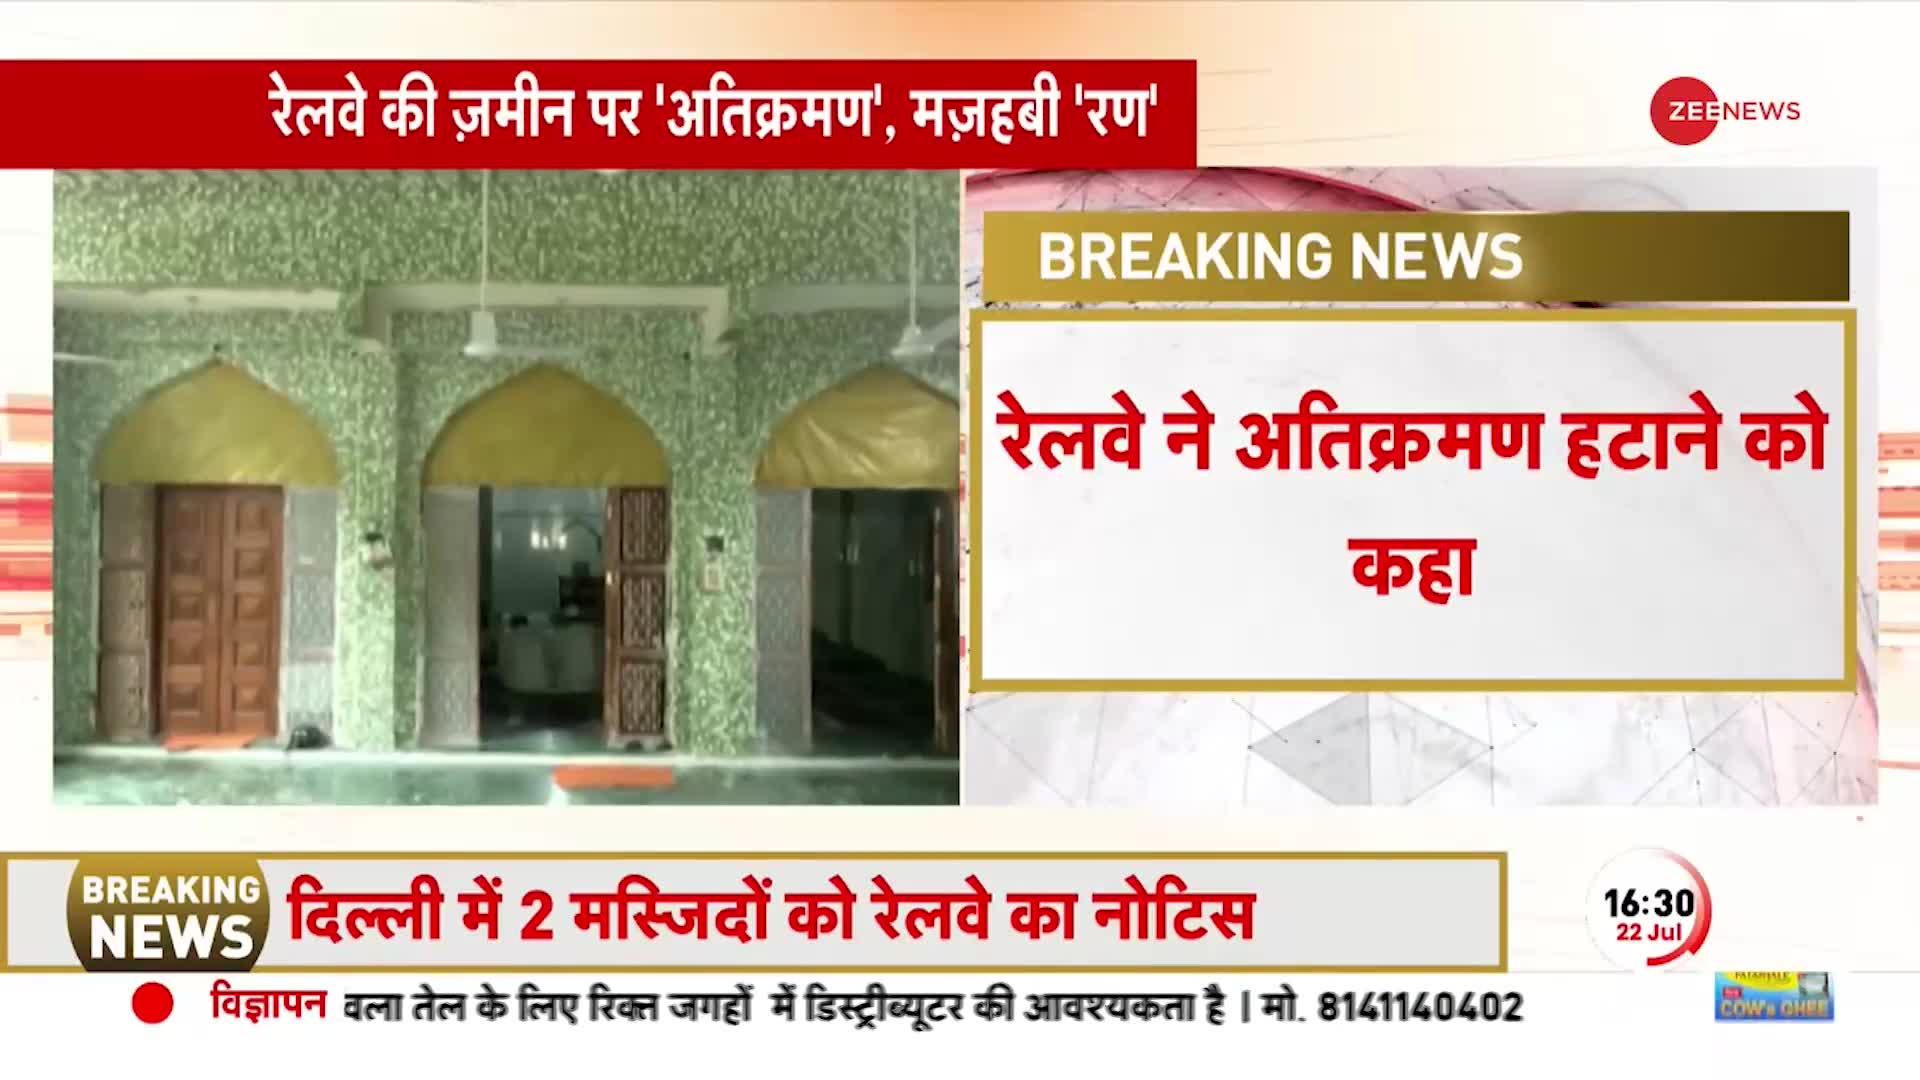 Breaking News: बंगाली मार्केट और तकिया बब्बर शाह मस्जिद को हटाने का 15 दिन का अल्टीमेट